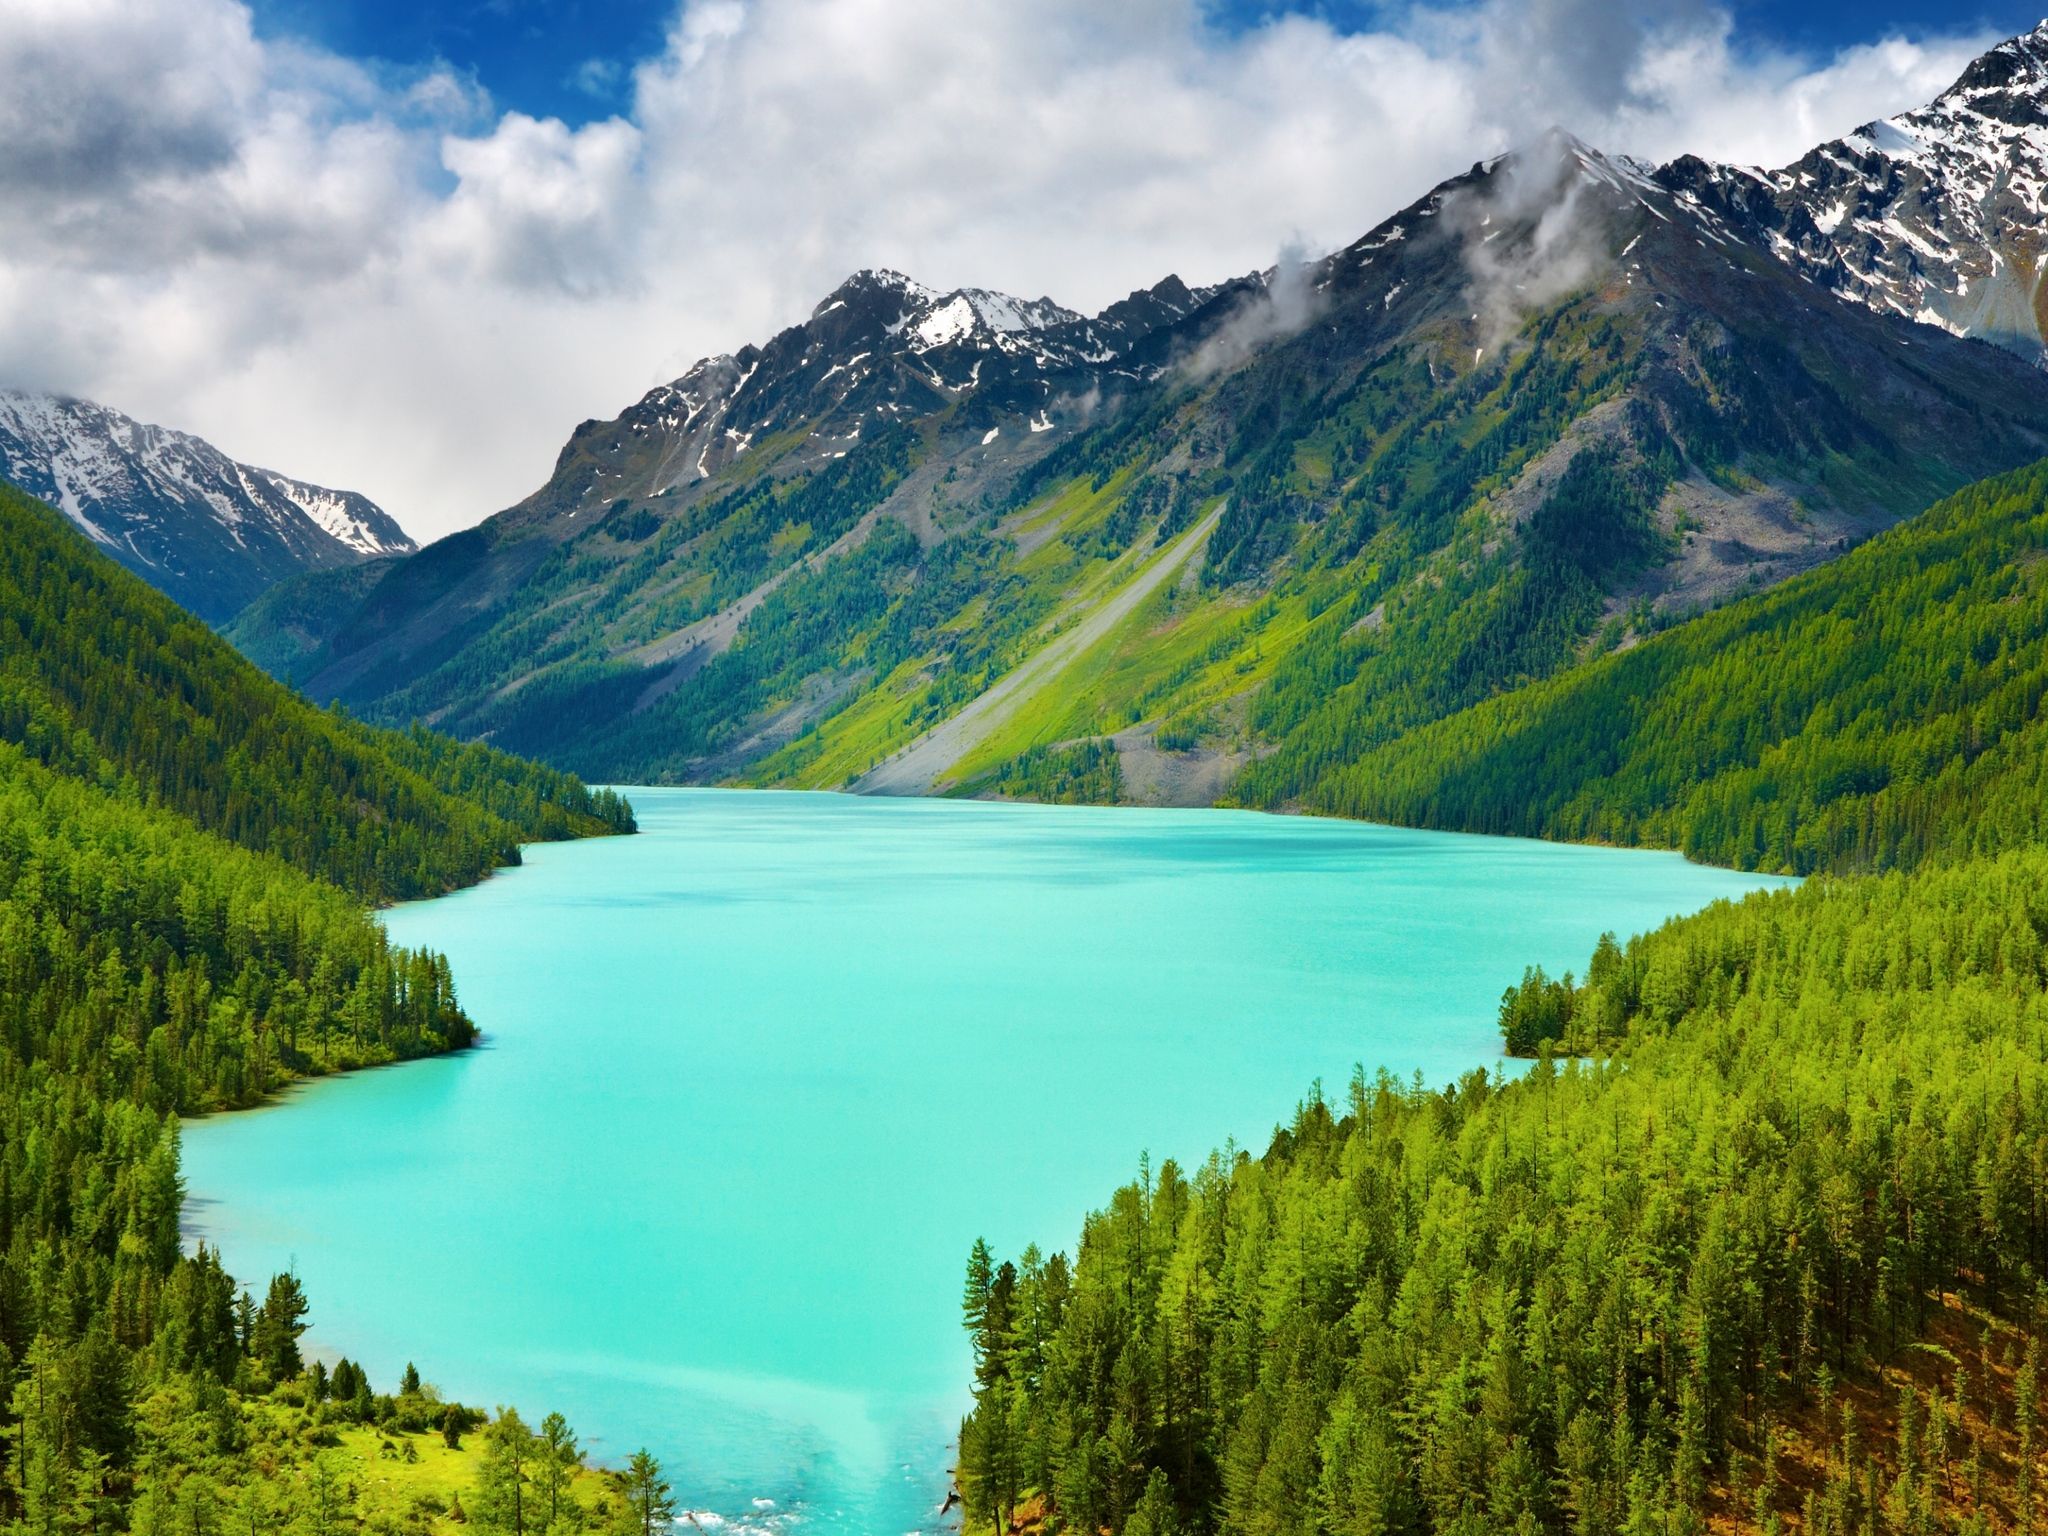  4k Natur Hintergrundbild 2048x1536. Kostenlose Hintergrundbilder Grüne Berge in Der Nähe Des Sees Unter Blauem Himmel Tagsüber, Bilder Für Ihren Desktop Und Fotos